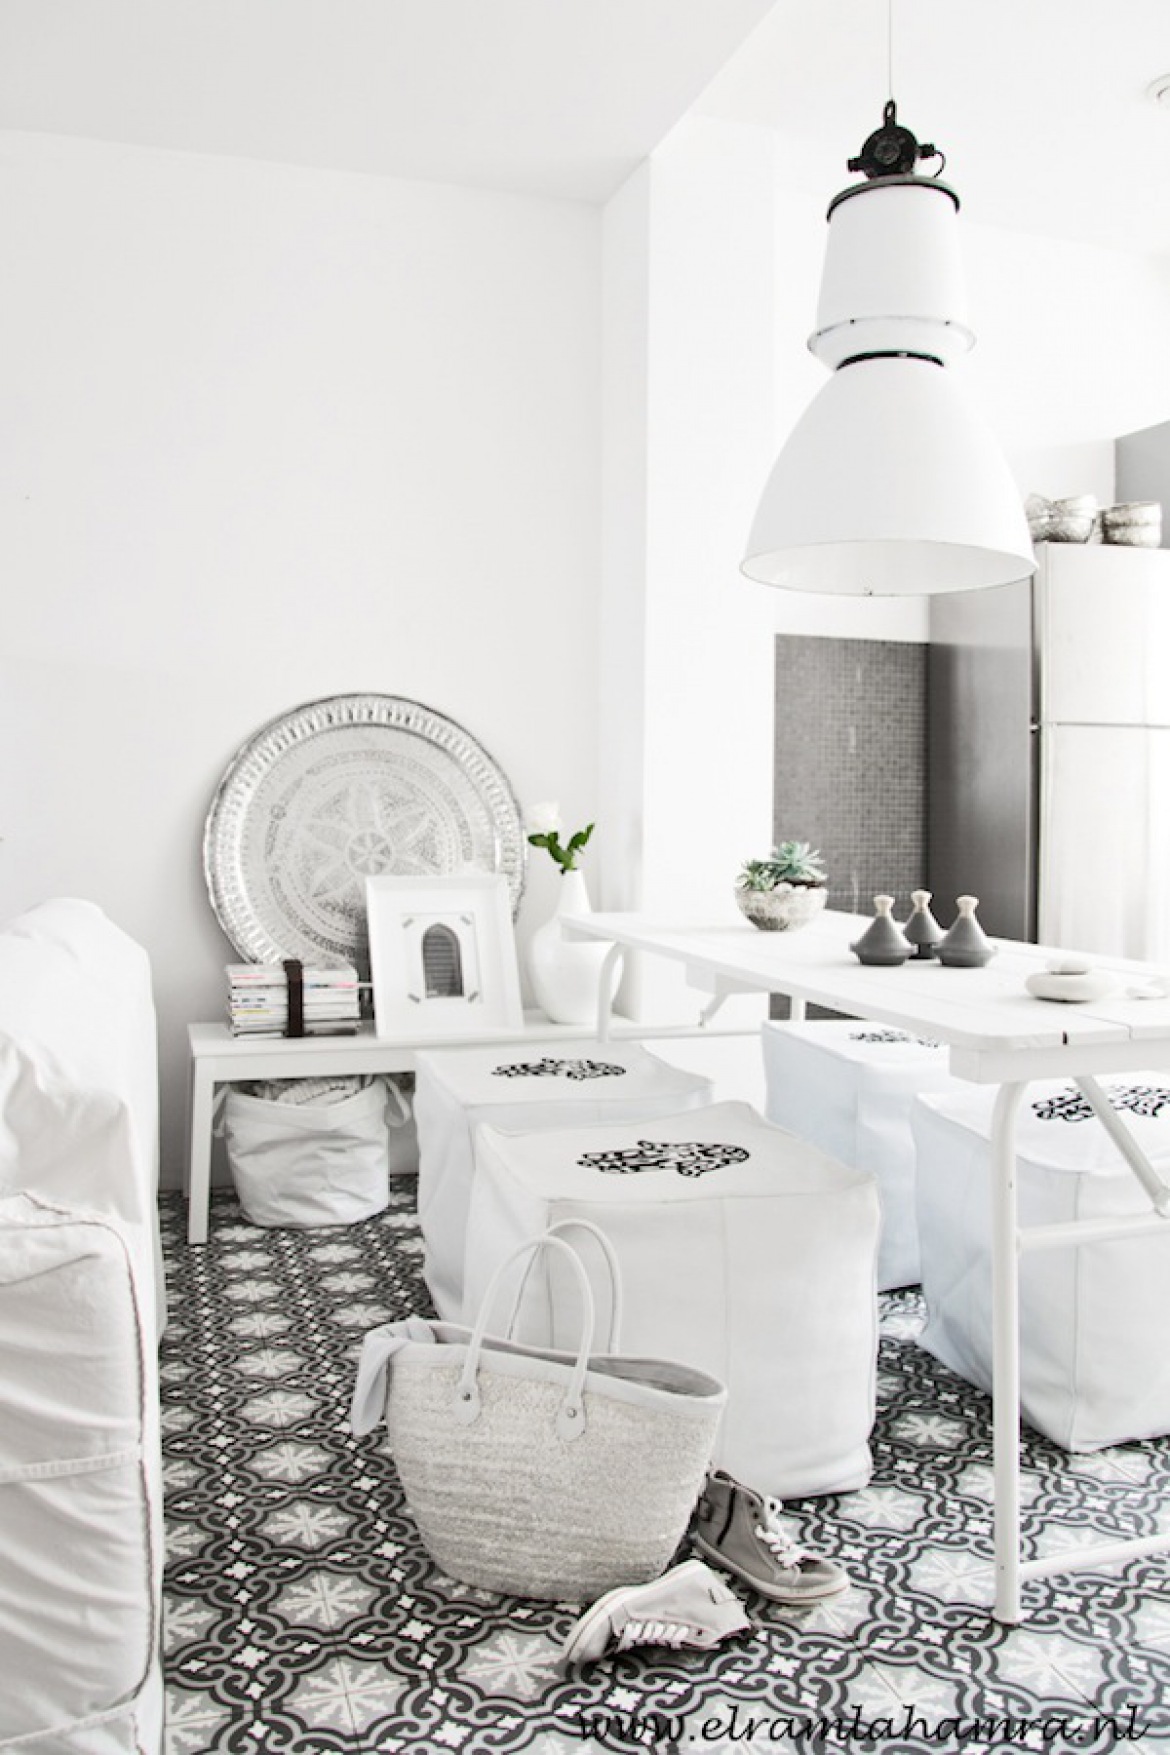 Marokańskie czarno-białe płytki na podłodze,srebrna taca matrokanska i duza biała lampa pendant nad stolem w jadalni (25645)